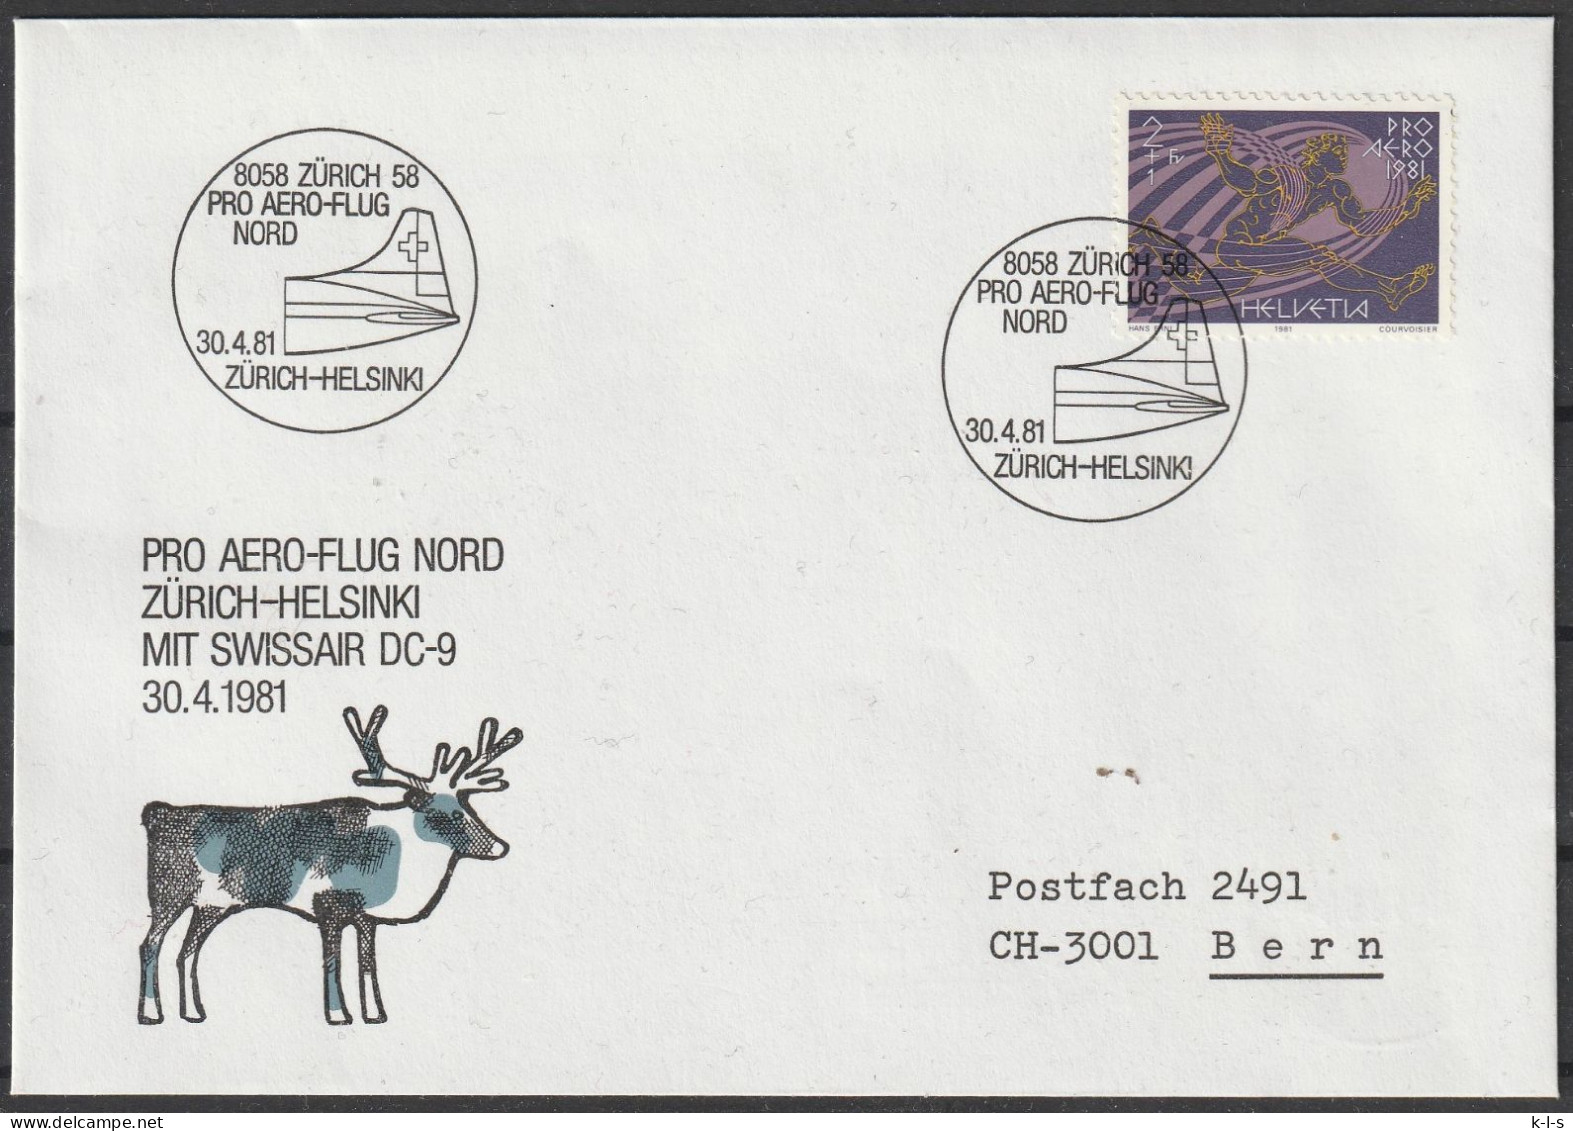 Schweiz: 1981, Fernbrief In EF, Mi. Nr. 1196, SoStpl. Zu Den Erinnerungsflug Am 30.04.1981, ZÜRICH-HELSINKI - Premiers Vols